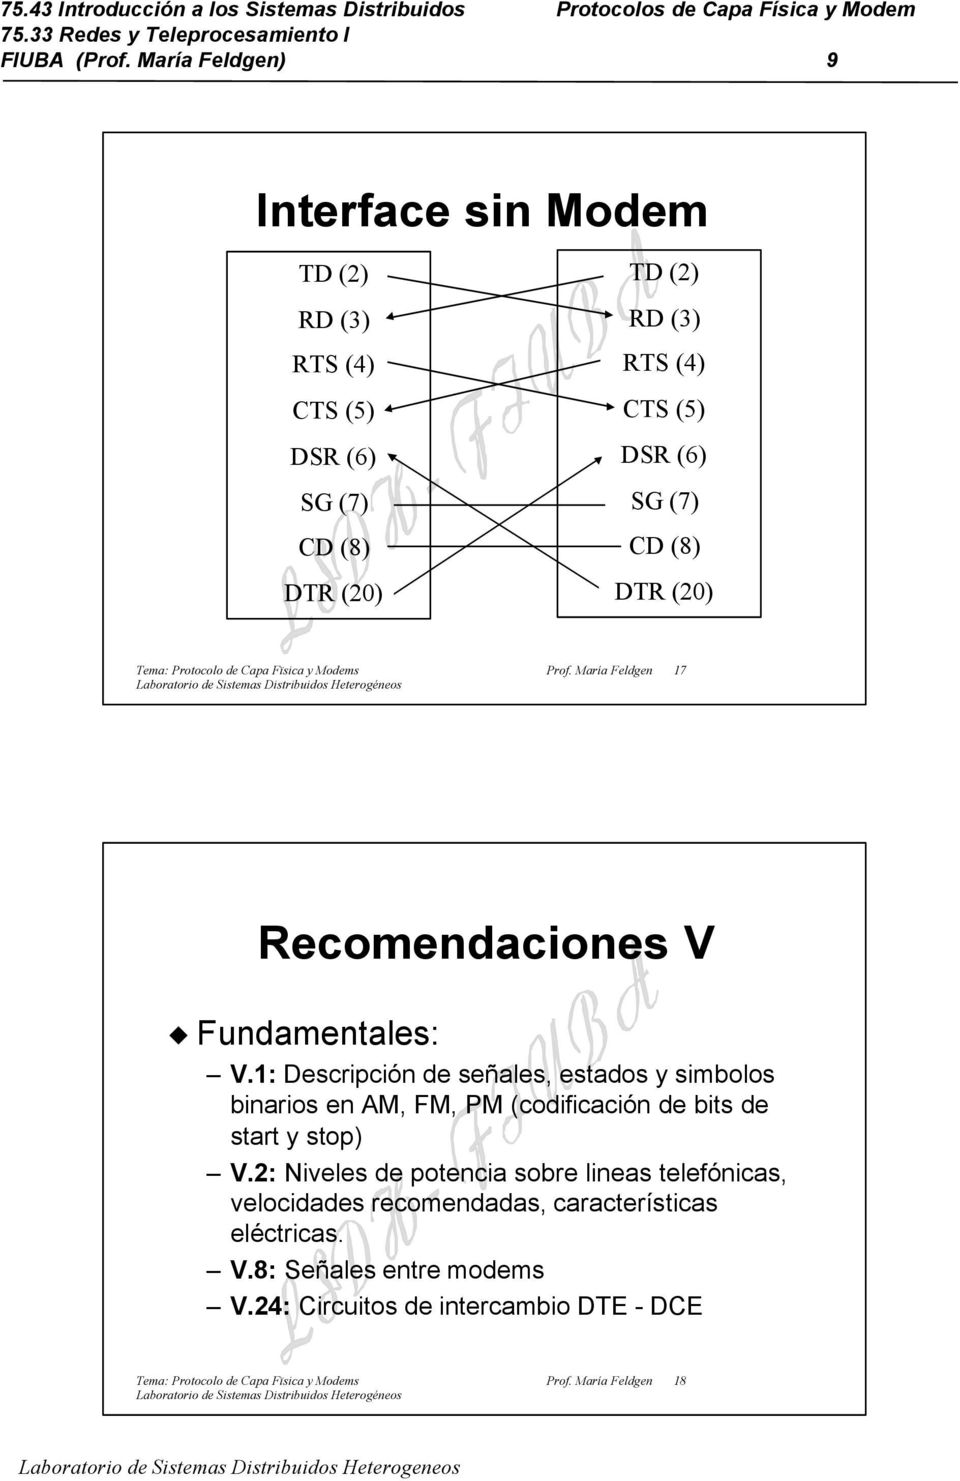 Protocolo de Capa Fïsica y Modems Prof. María Feldgen 17 Recomendaciones V Fundamentales: V.